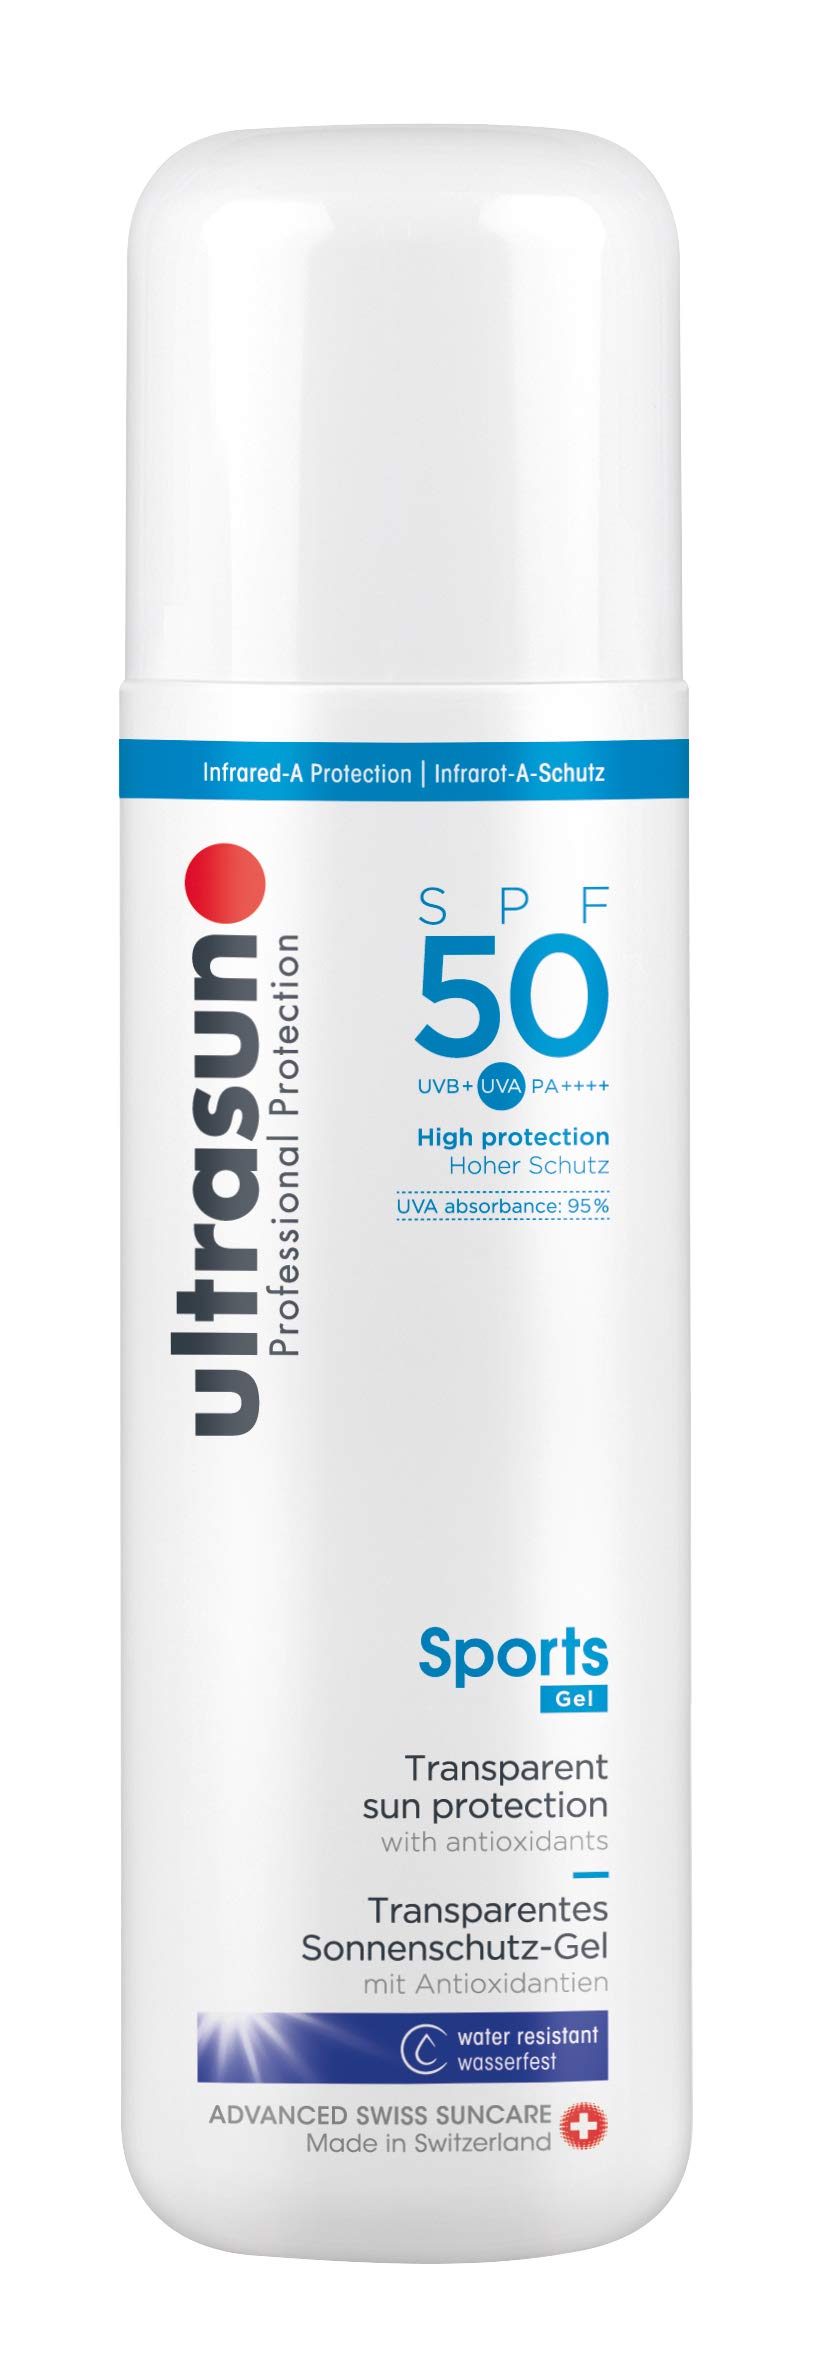 Ultrasun Sports Gel Spf50 Transparentes Sonnenschutz-Gel, 200 ml